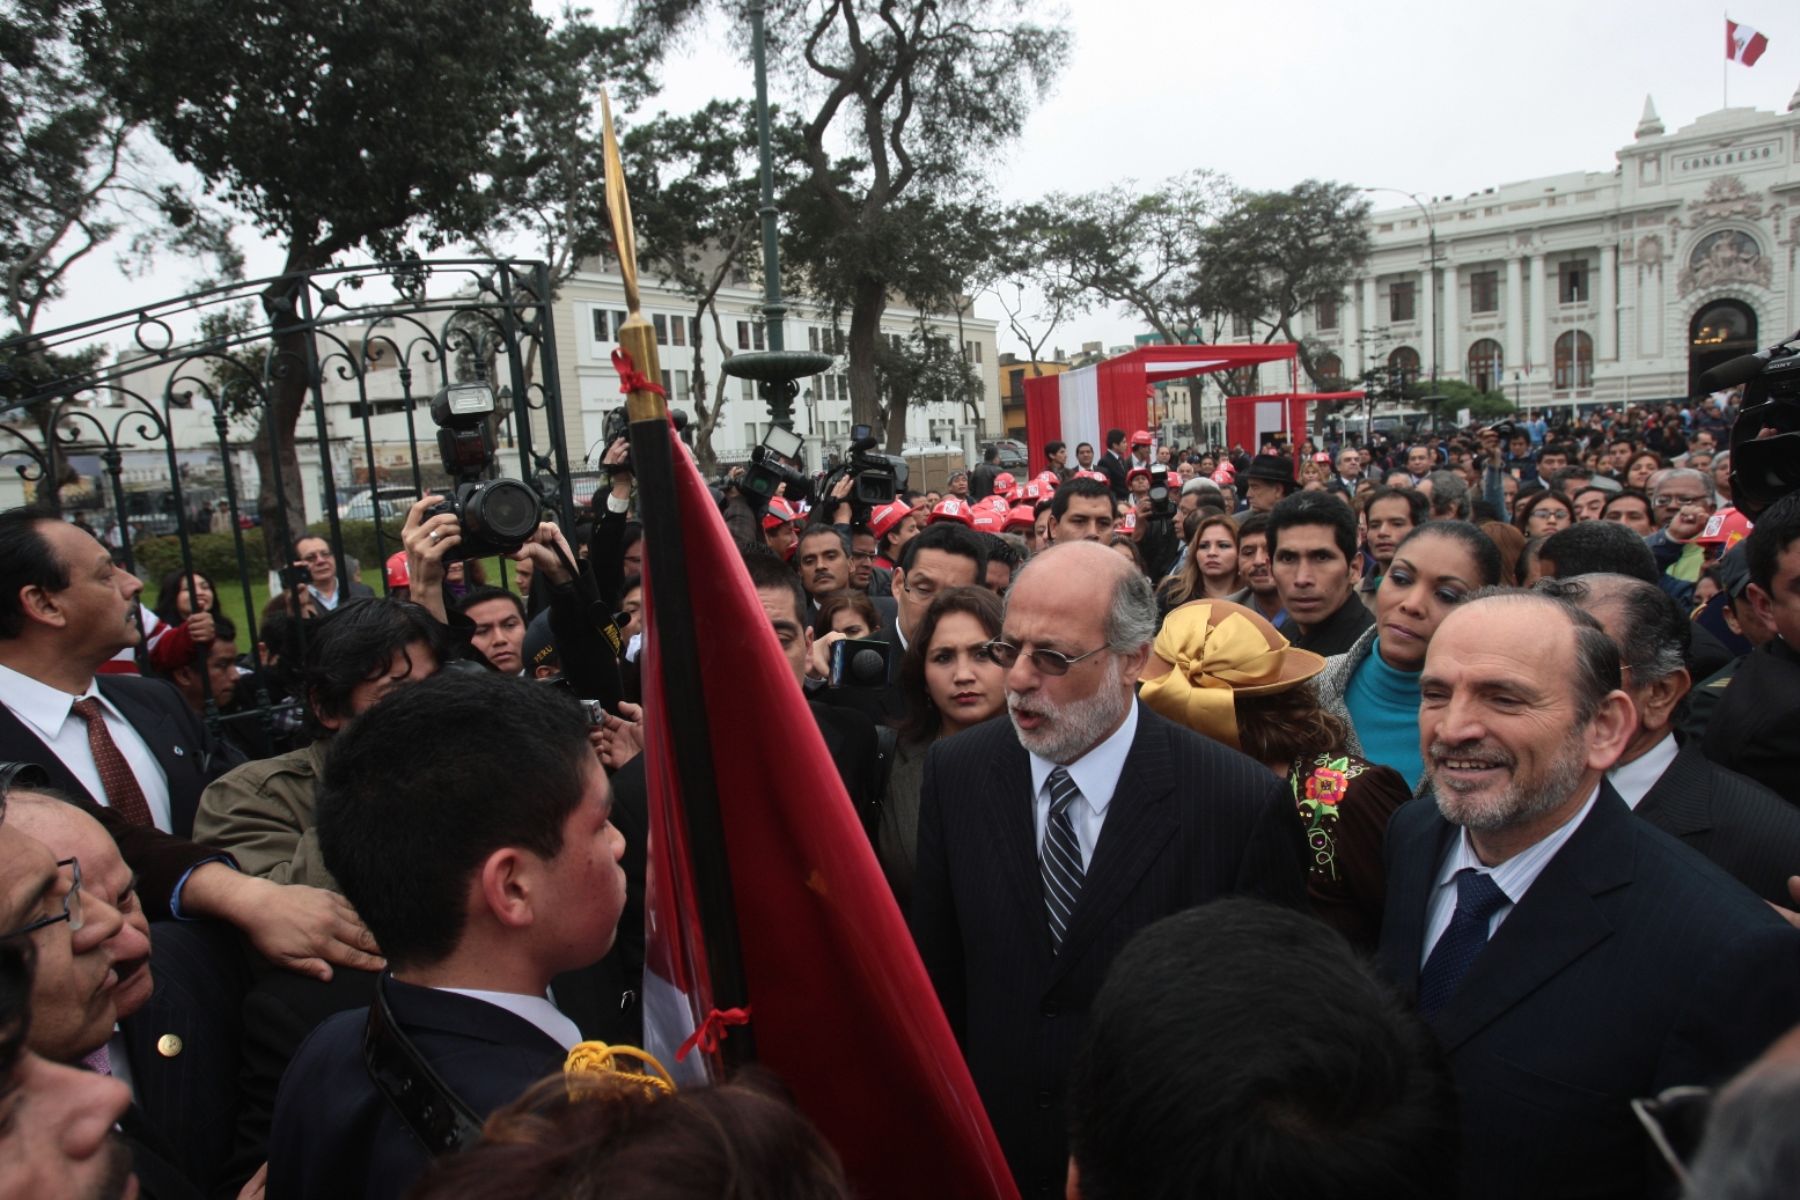 El presidente del Congreso, Daniel Abugattás, encabezó ceremonia de apertura de las puertas de plaza Bolívar. Foto: ANDINA/Juan Carlos Guzmán Negrini.